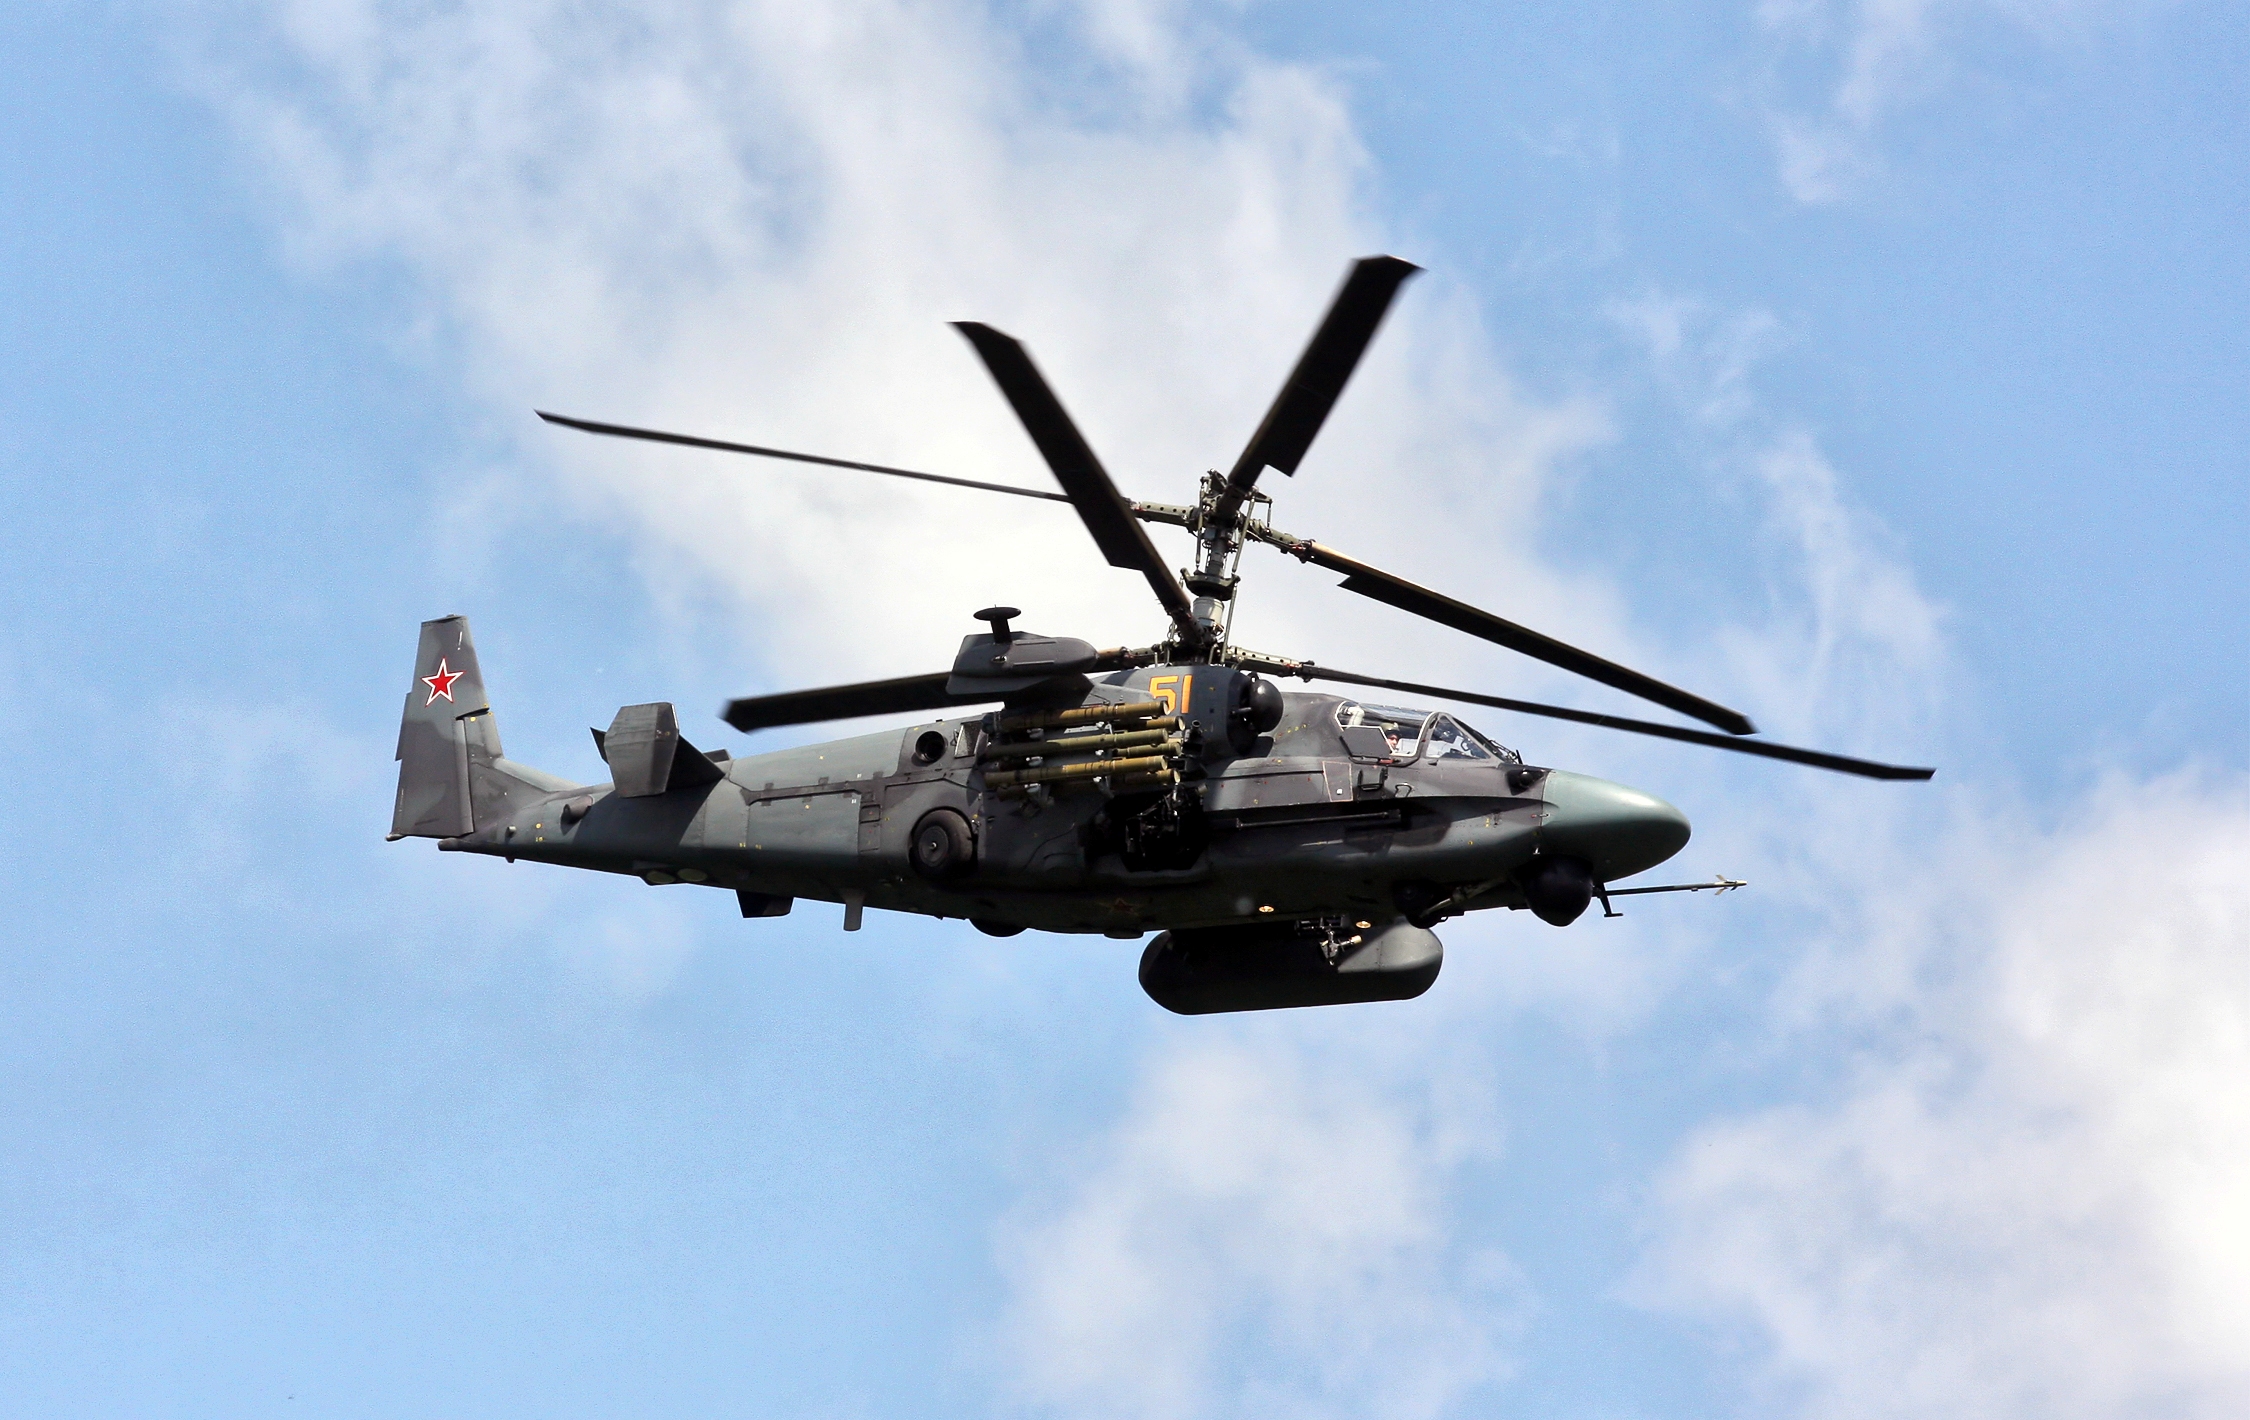 L'AFU a montré comment elle a abattu un hélicoptère d'attaque russe Ka-52 Alligator à l'aide de systèmes de défense aérienne portables RBS 70.